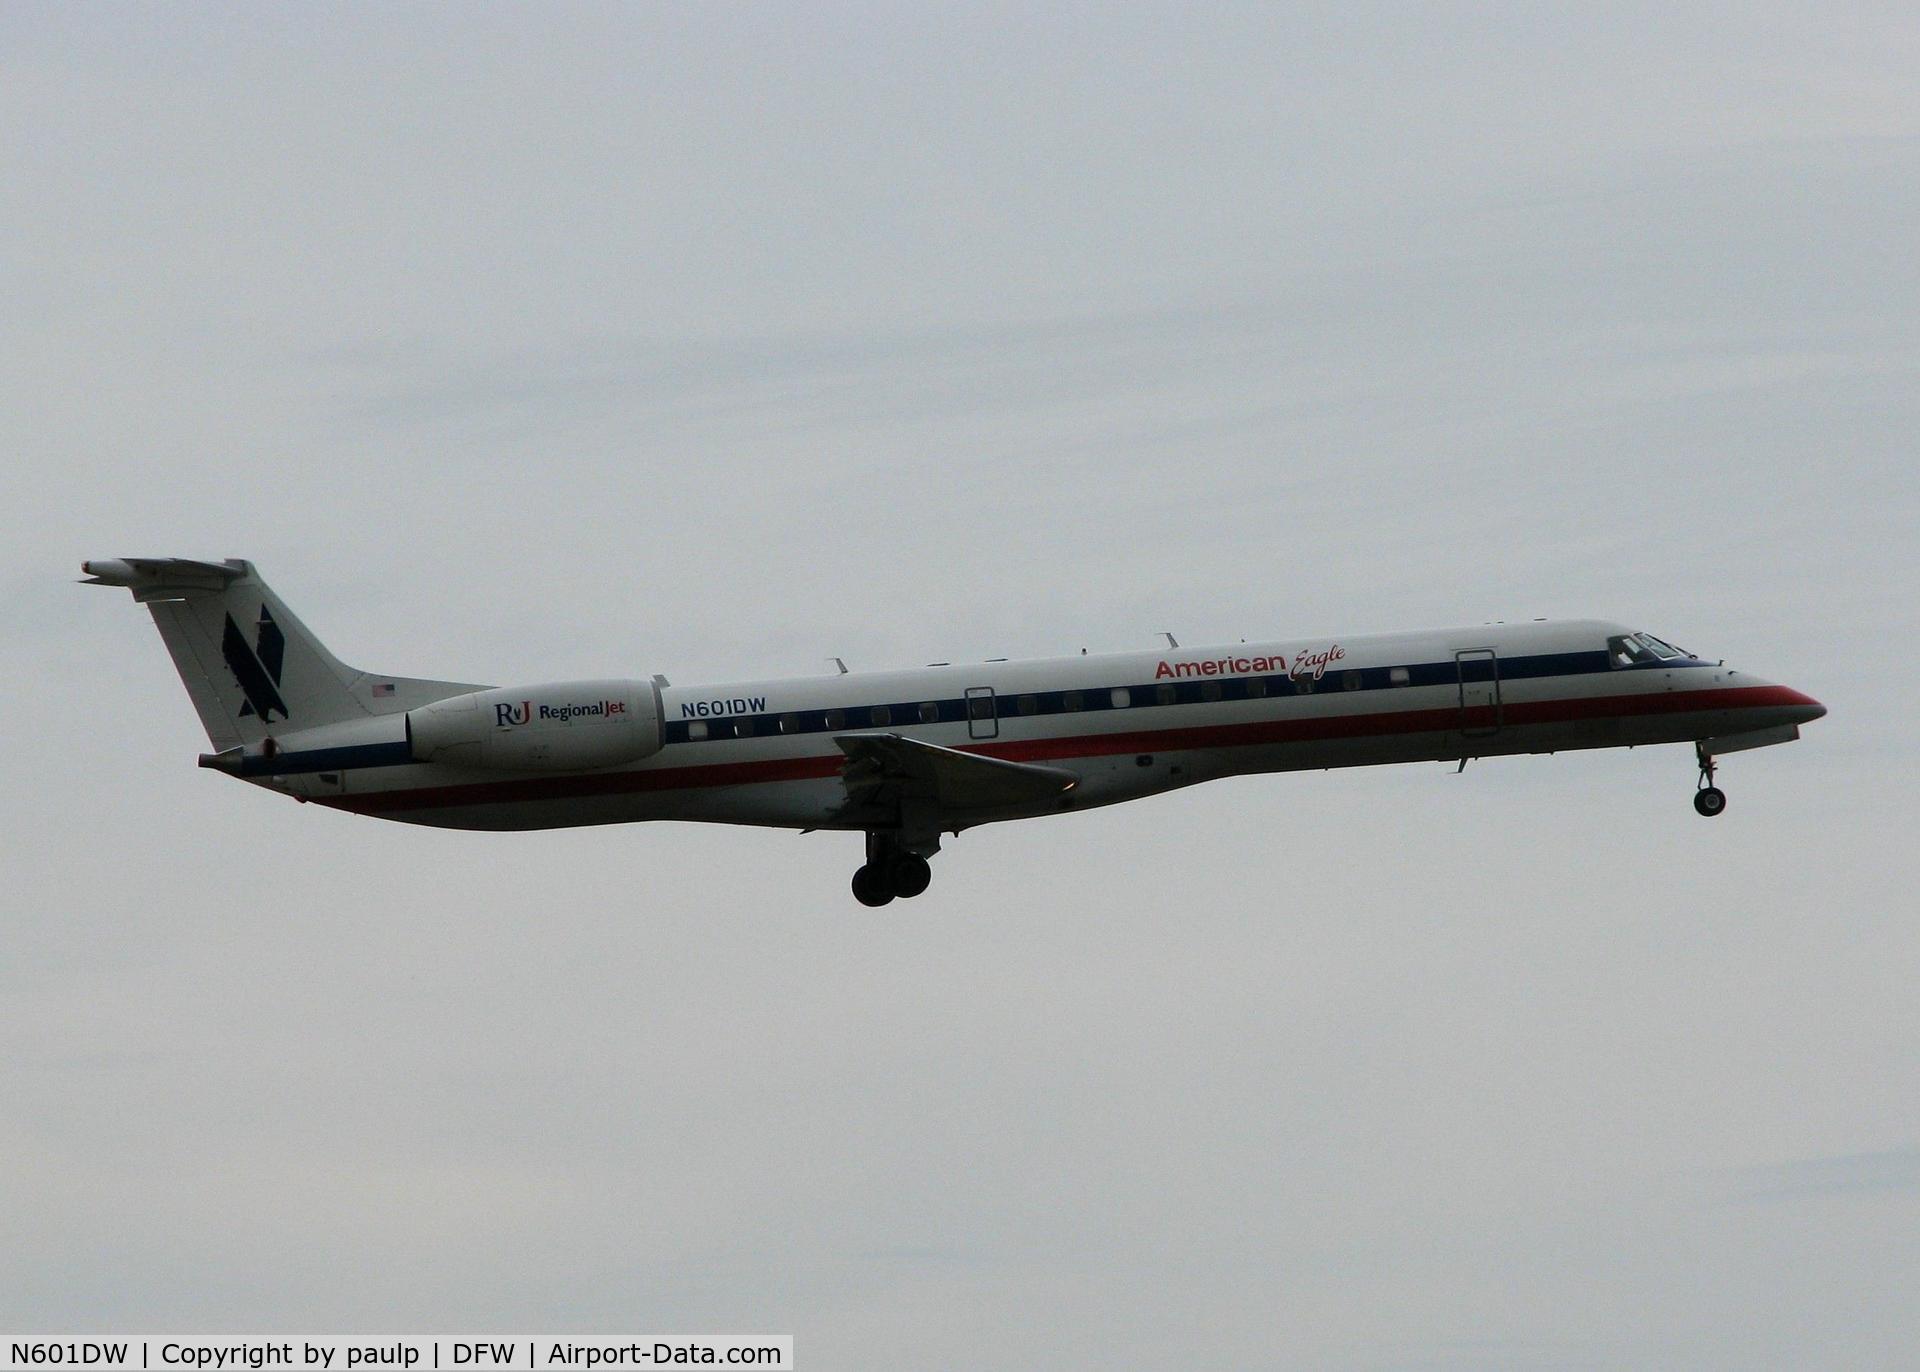 N601DW, 1998 Embraer ERJ-145LR (EMB-145LR) C/N 145046, Landing on 18R at DFW. A rainy day in Dallas!